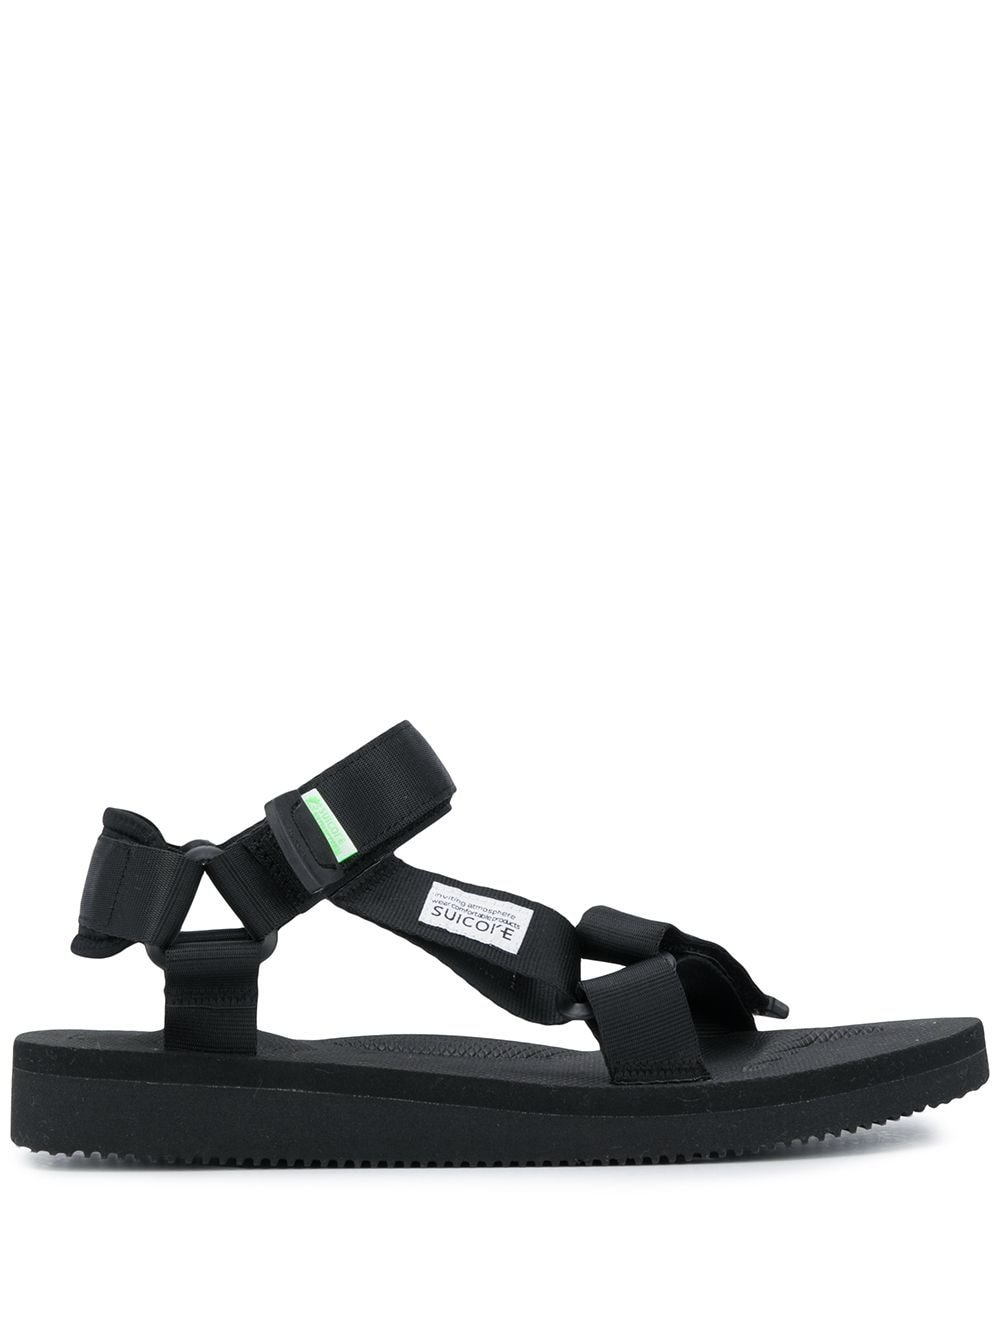 Suicoke open toe ripstop sandals - Black von Suicoke